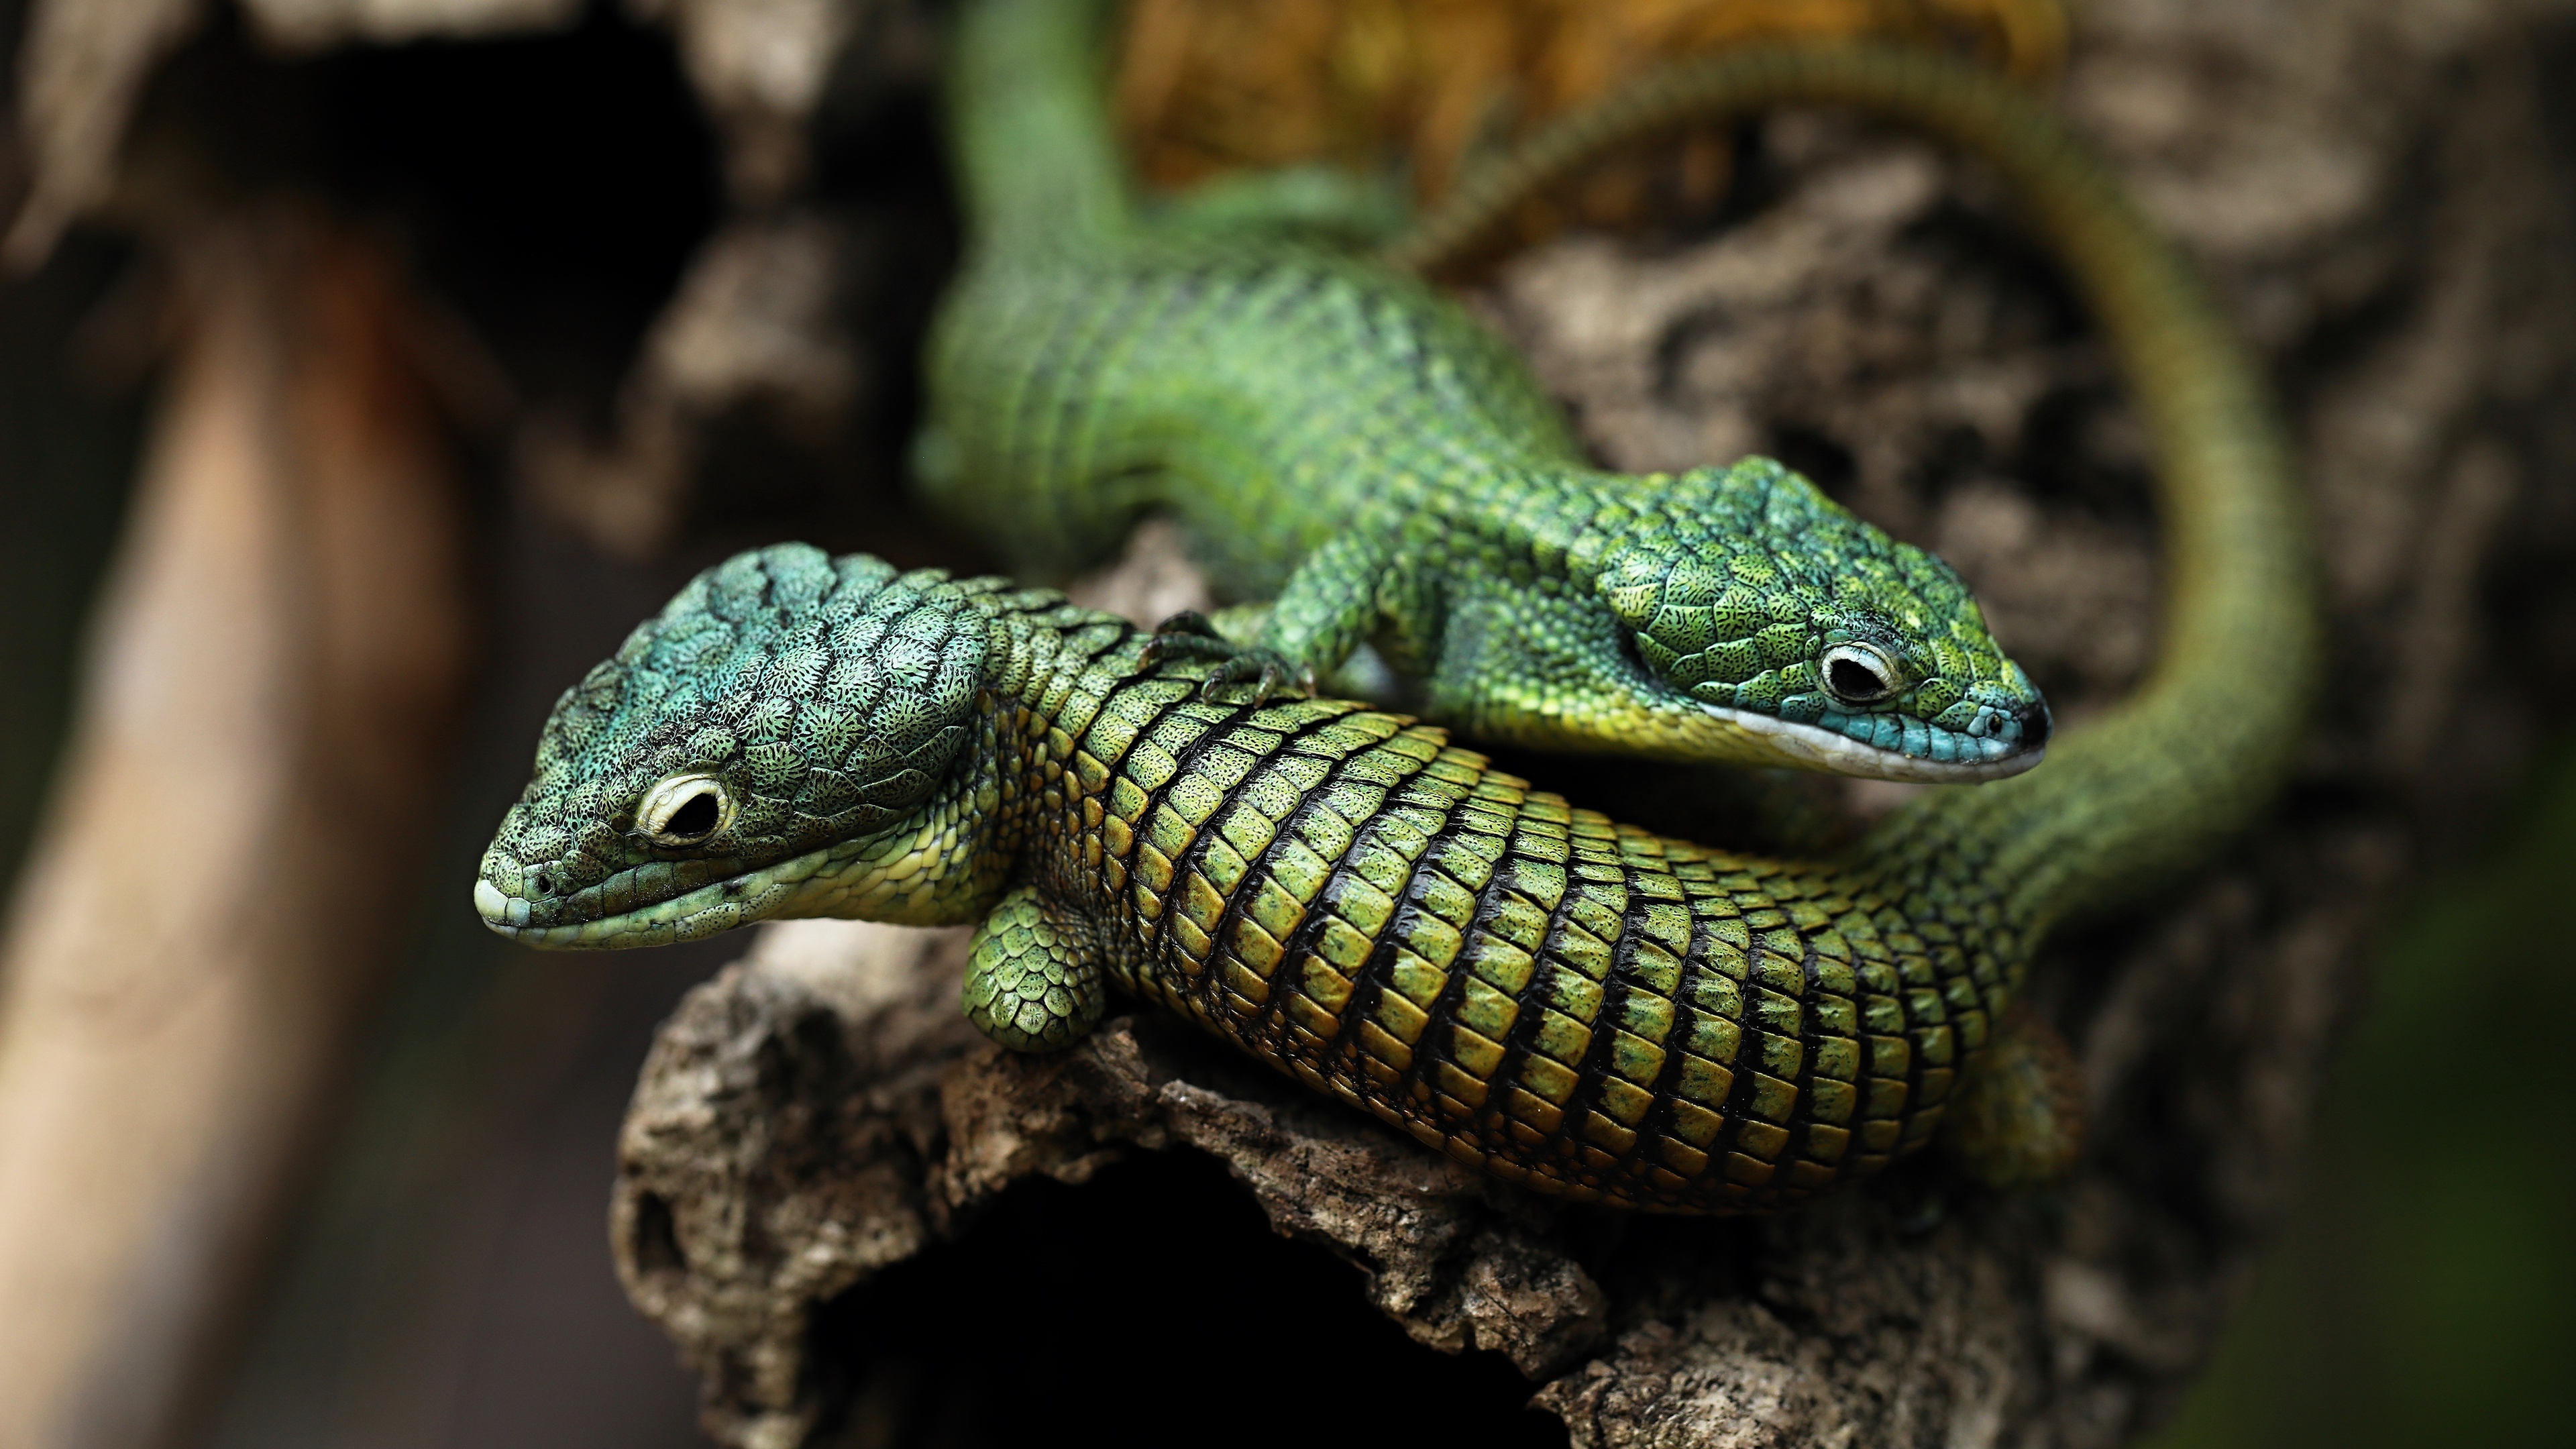 Mexican alligator lizard, Green arboreal species, Reptile habitat, Unique appearance, 3840x2160 4K Desktop